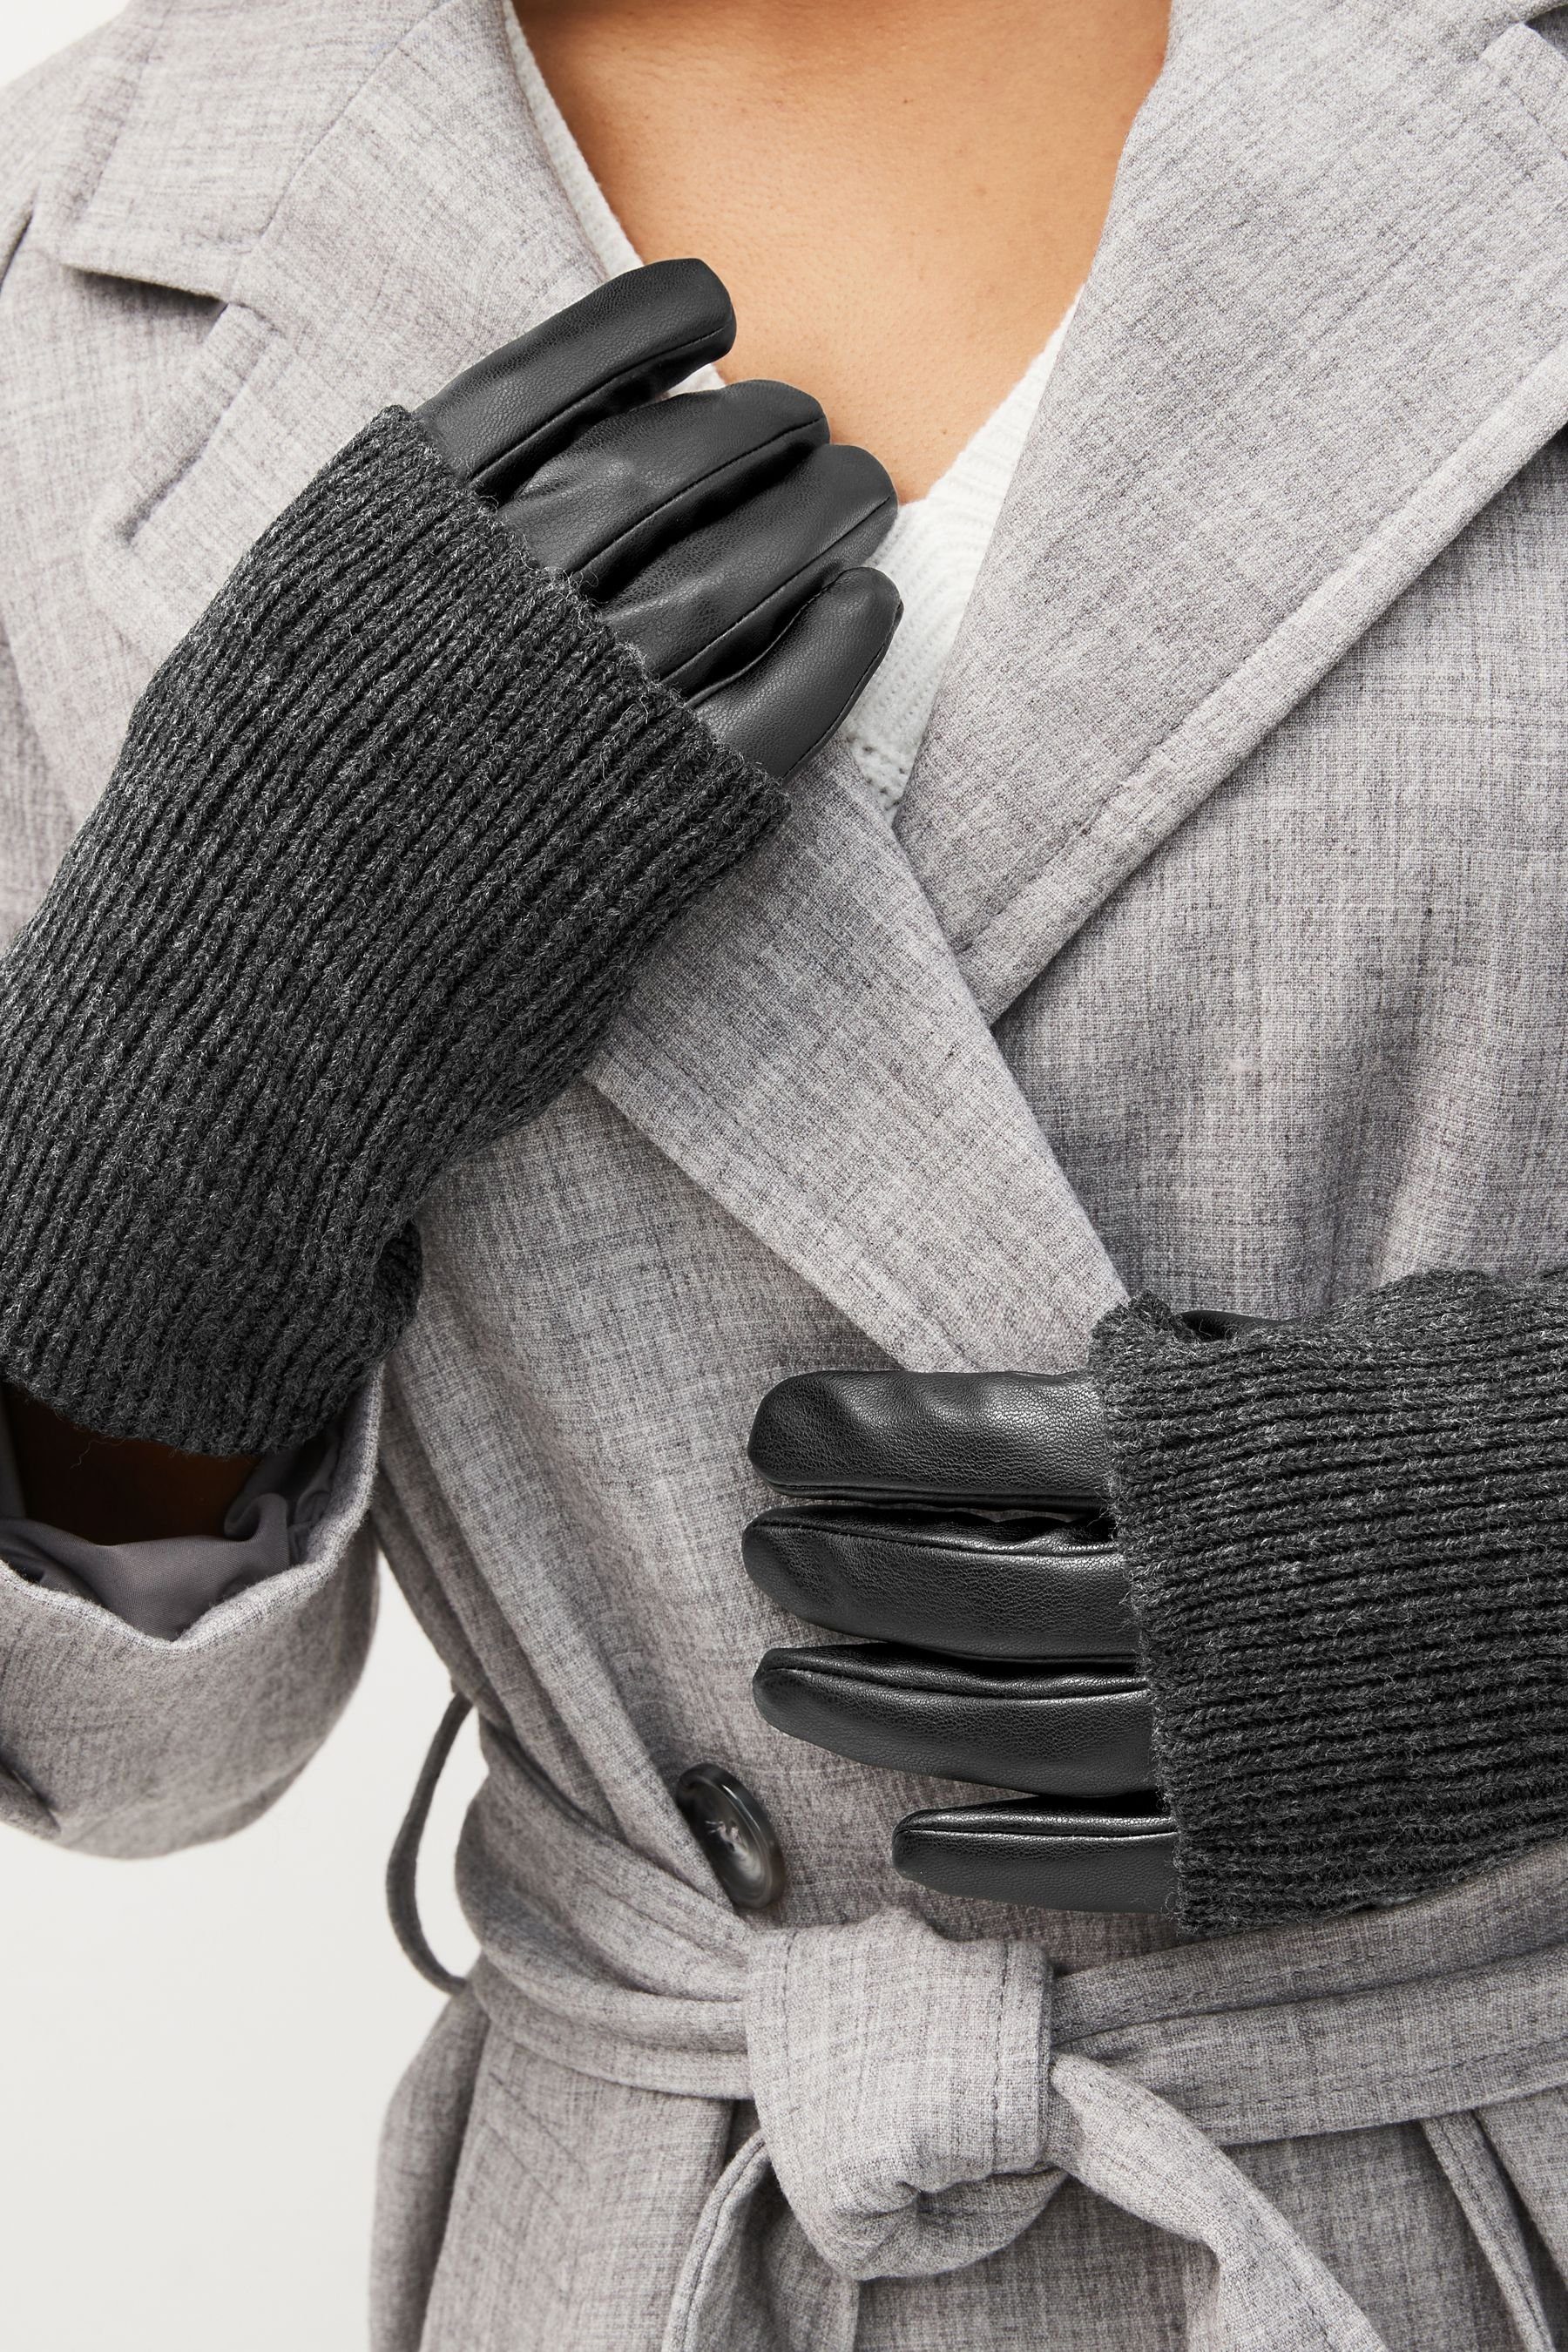 Handwärmer Strickhandschuhe Next PU-Handschuh